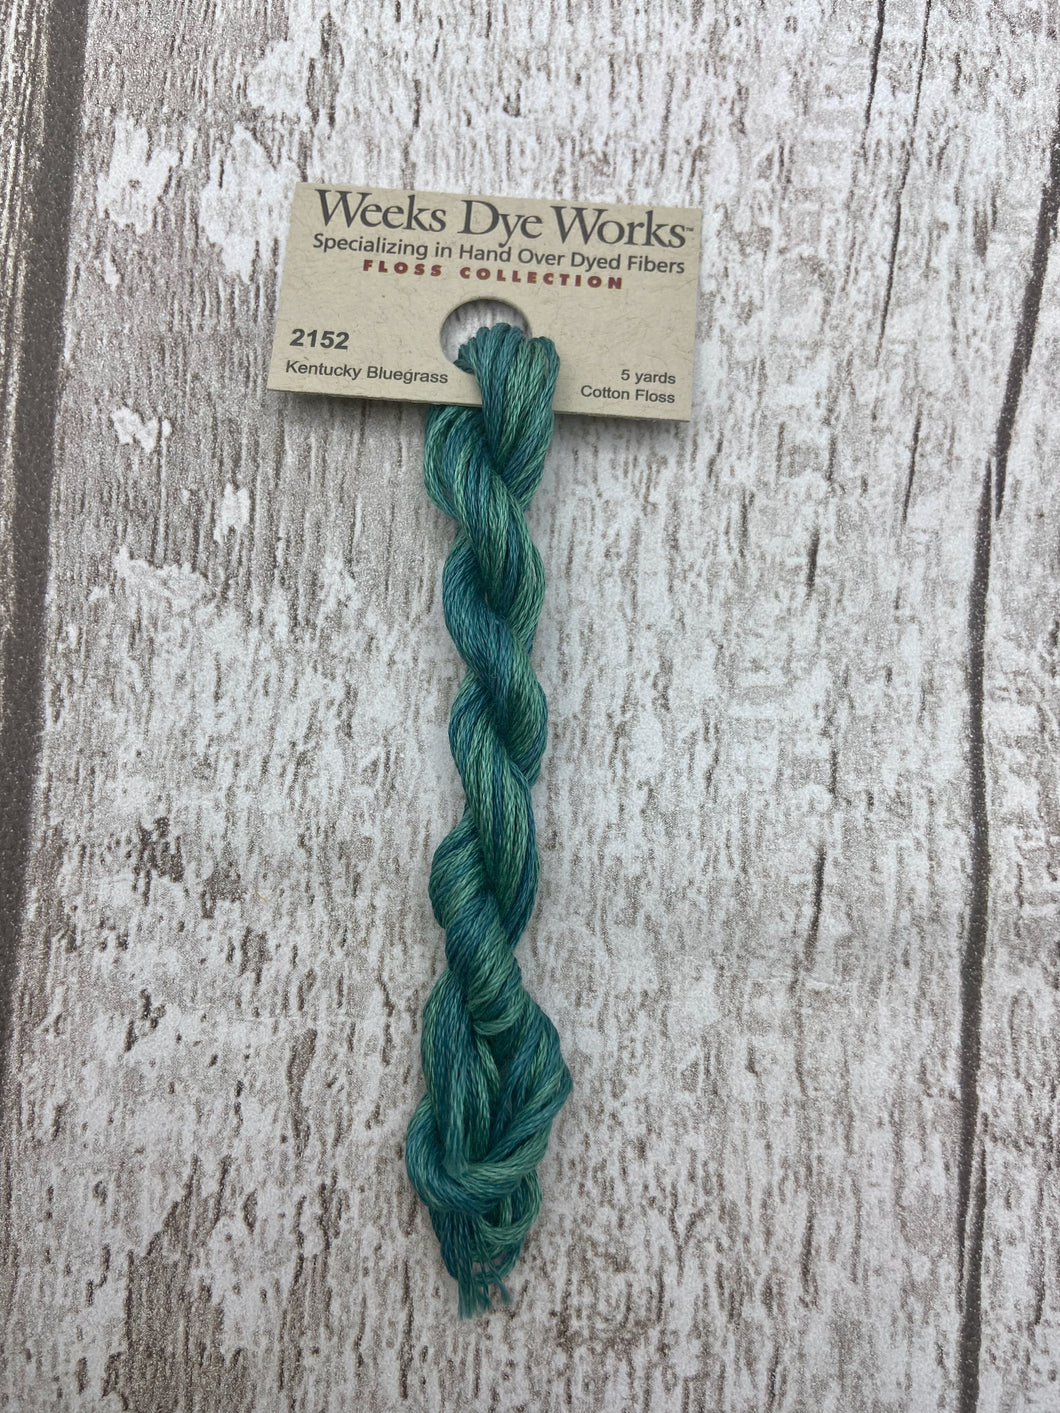 Kentucky Bluegrass (#2152) 6-strand cotton floss